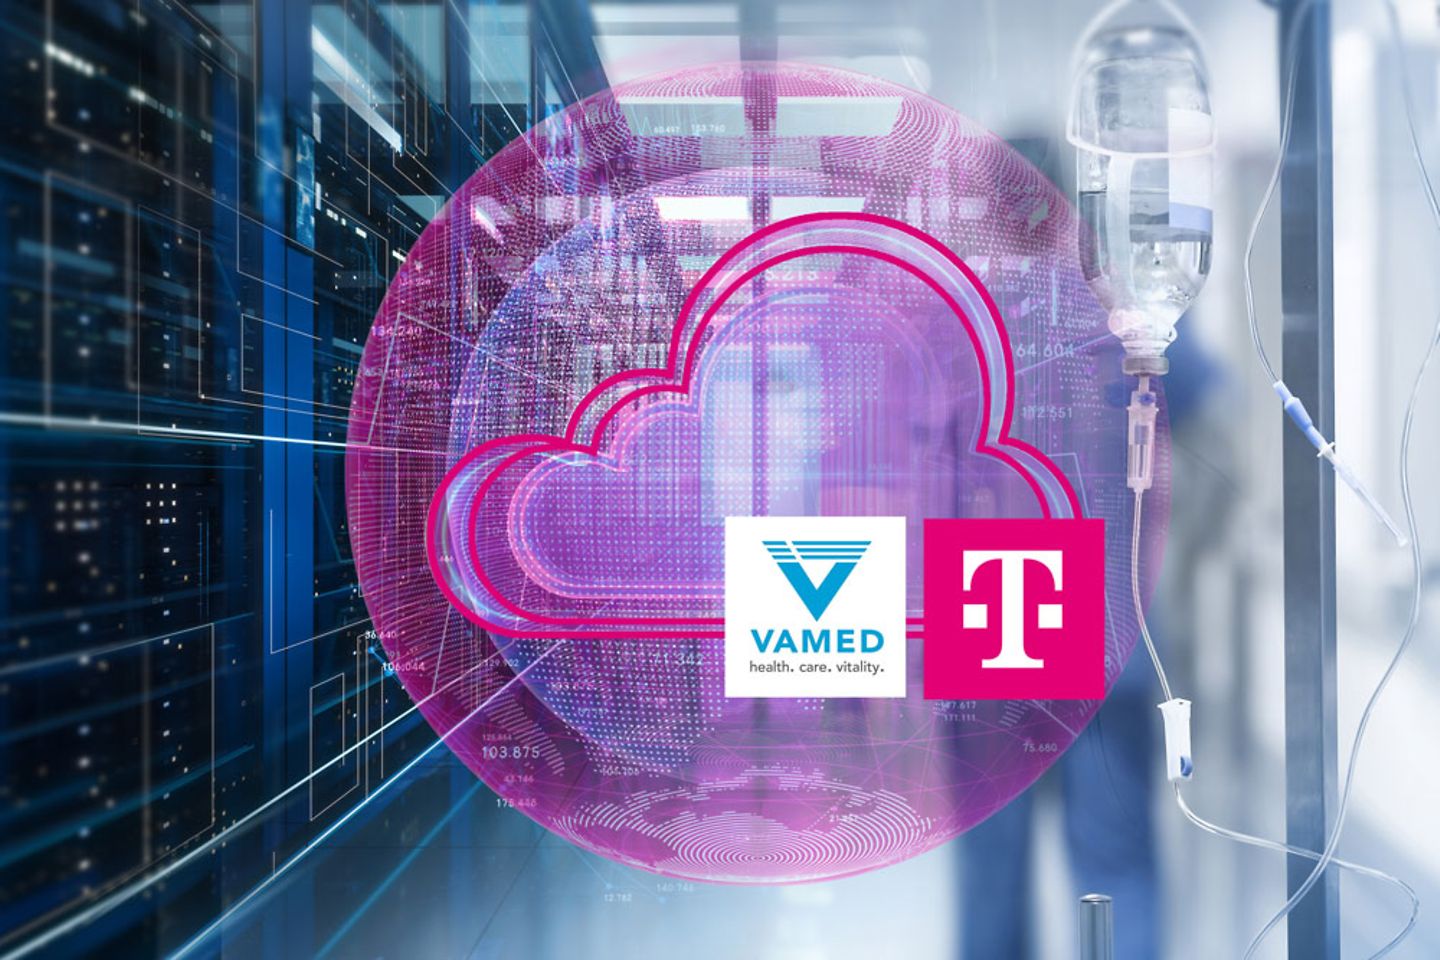 Serverraum links, Person in Krankenhauskleidung rechts, magentafarbene Wolke mit Vamed- und Telekom-Logo im Vordergrund